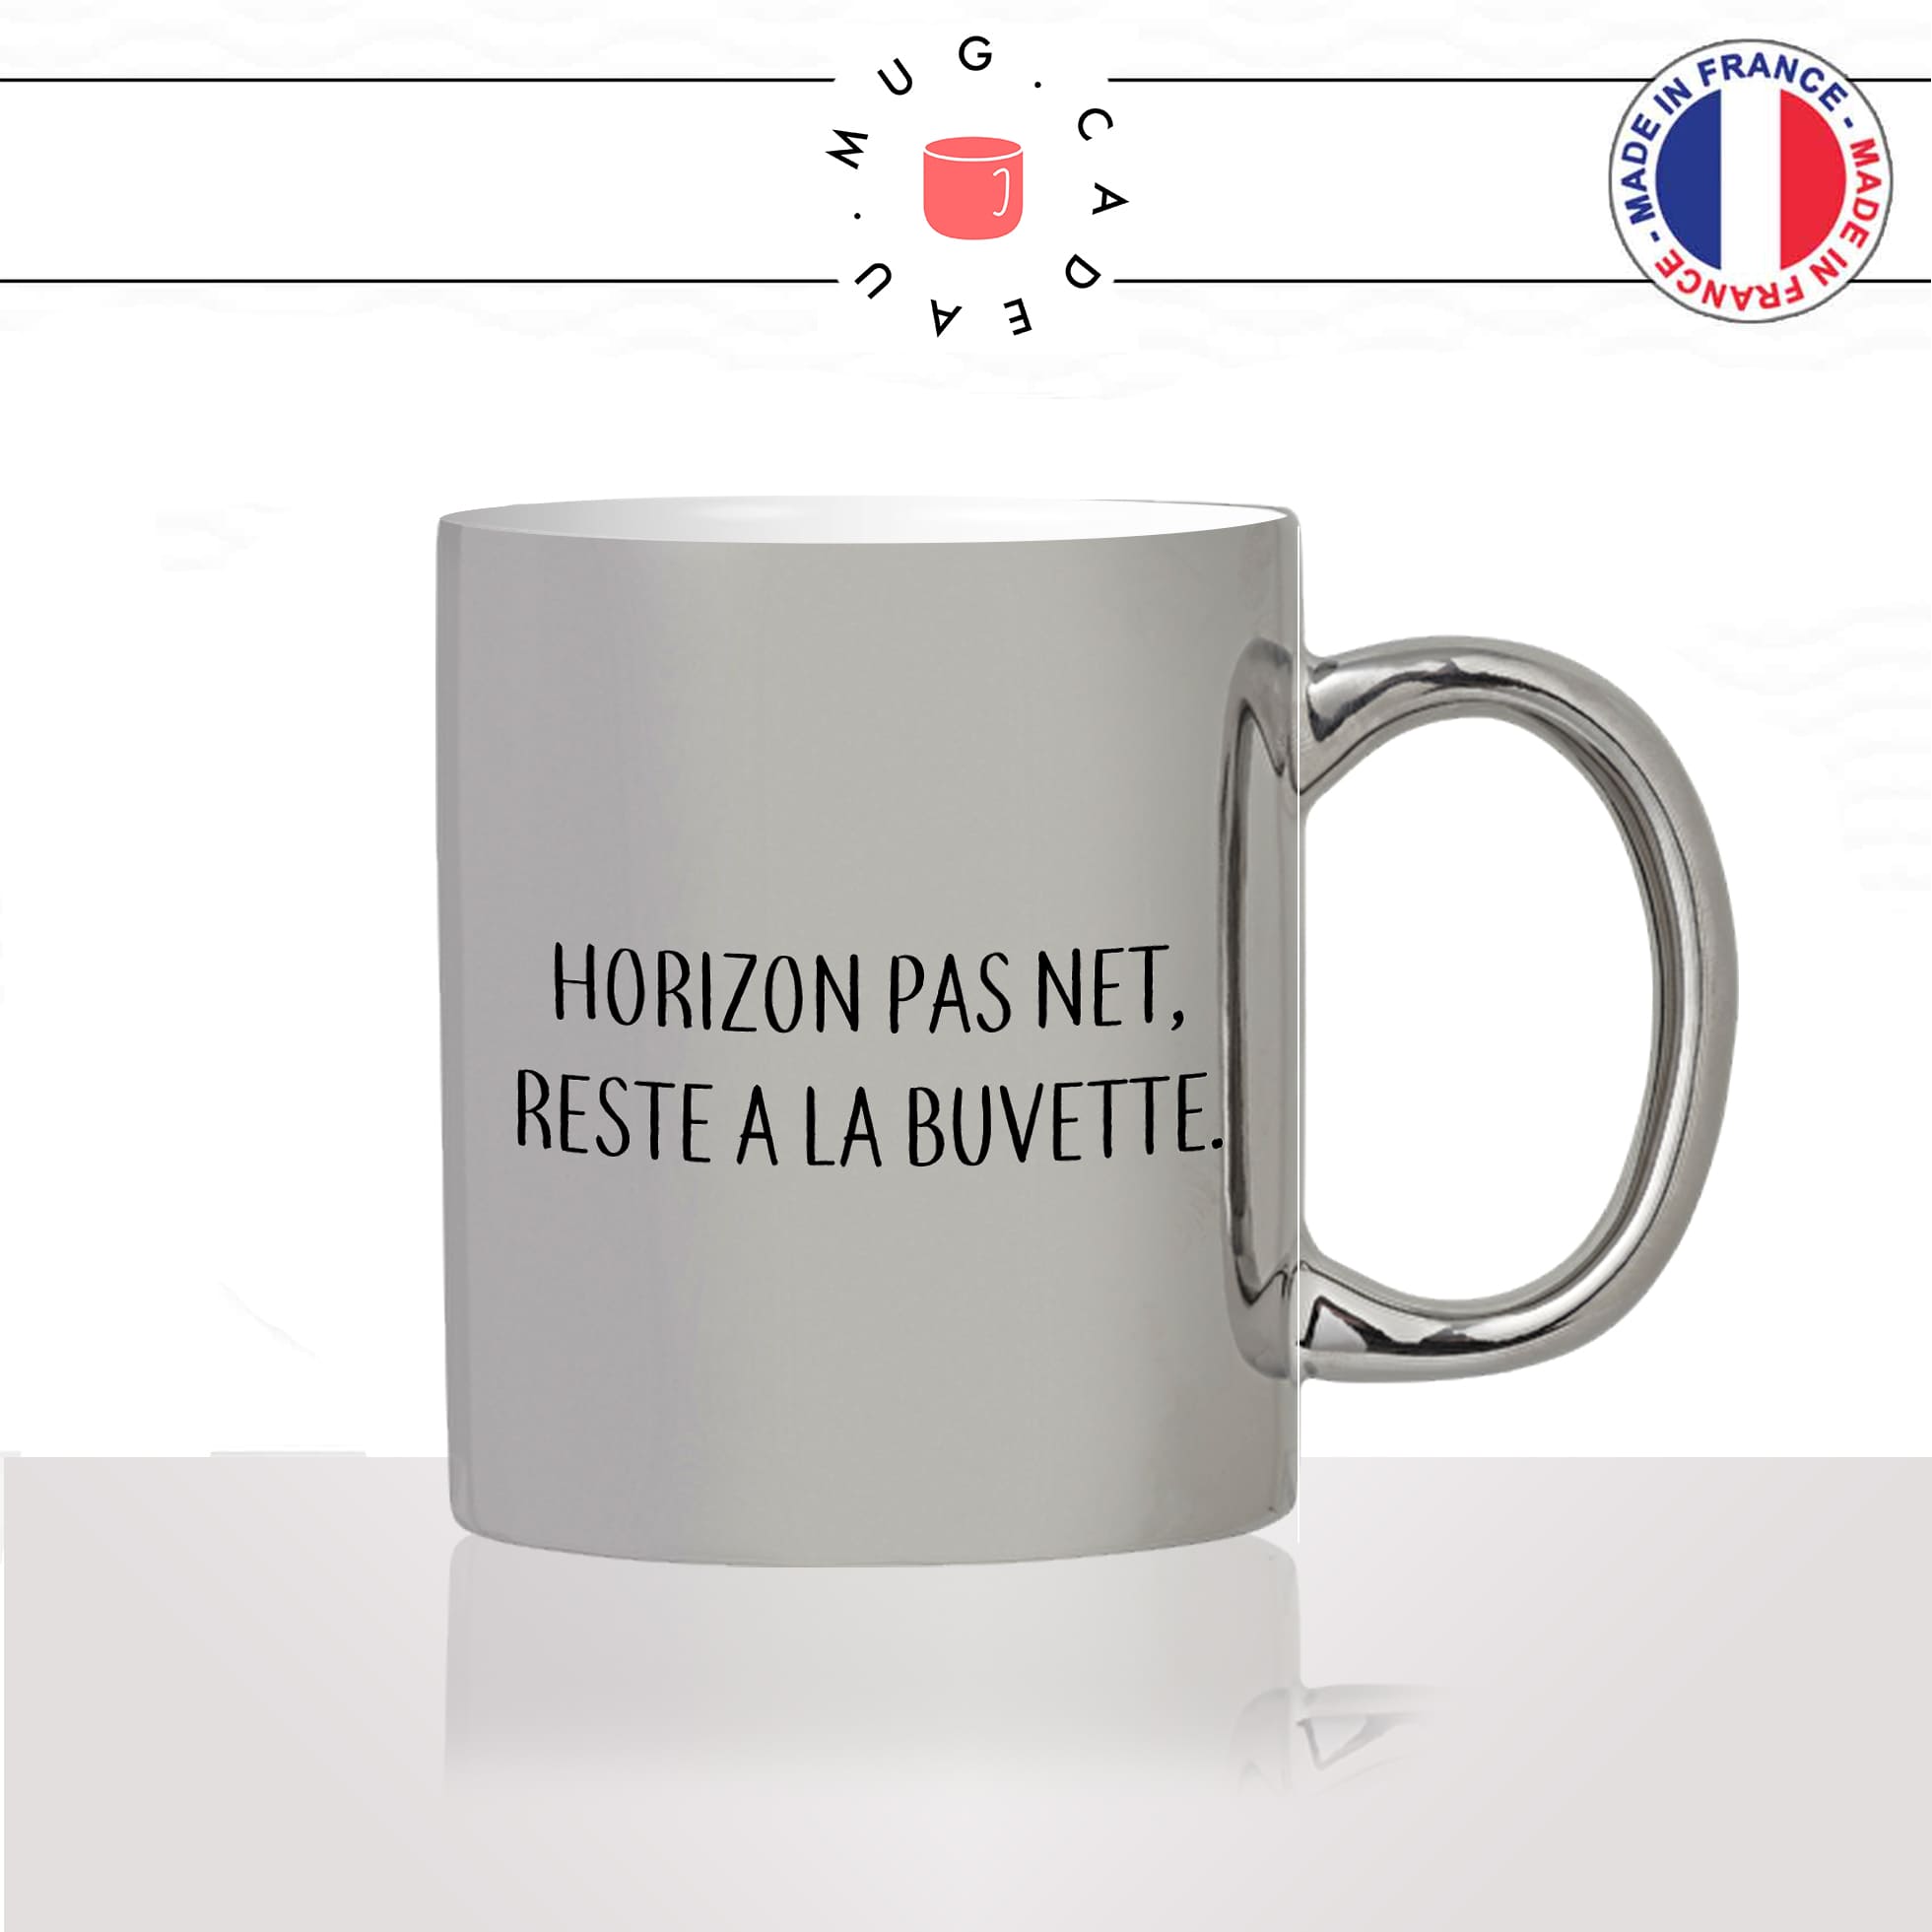 mug-tasse-argent-argenté-silver-horizon-pas-net-reste-a-la-buvette-apéro-breton-citation-bretagne-humour-idée-cadeau-fun-cool-café-thé2